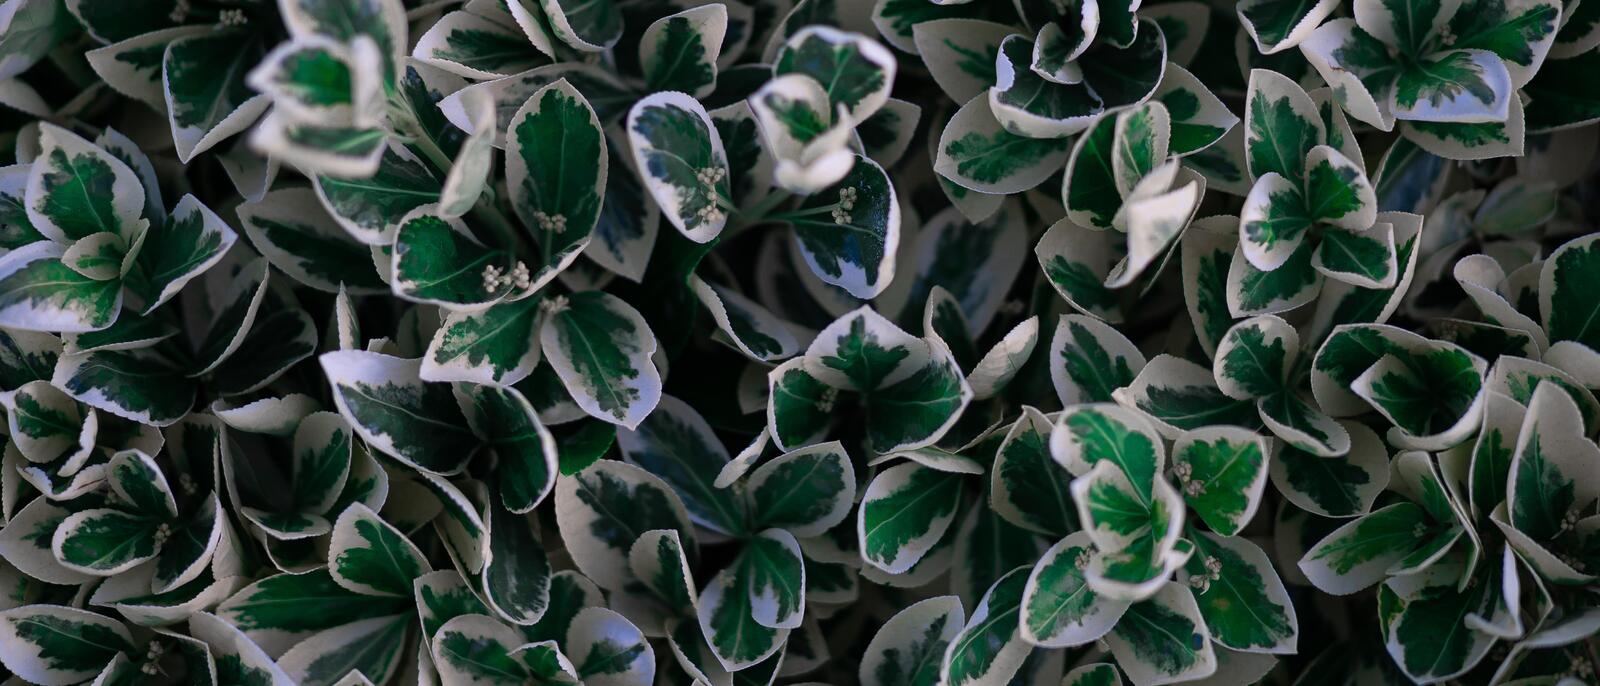 Wallpapers shrubs plants fresh leaves on the desktop